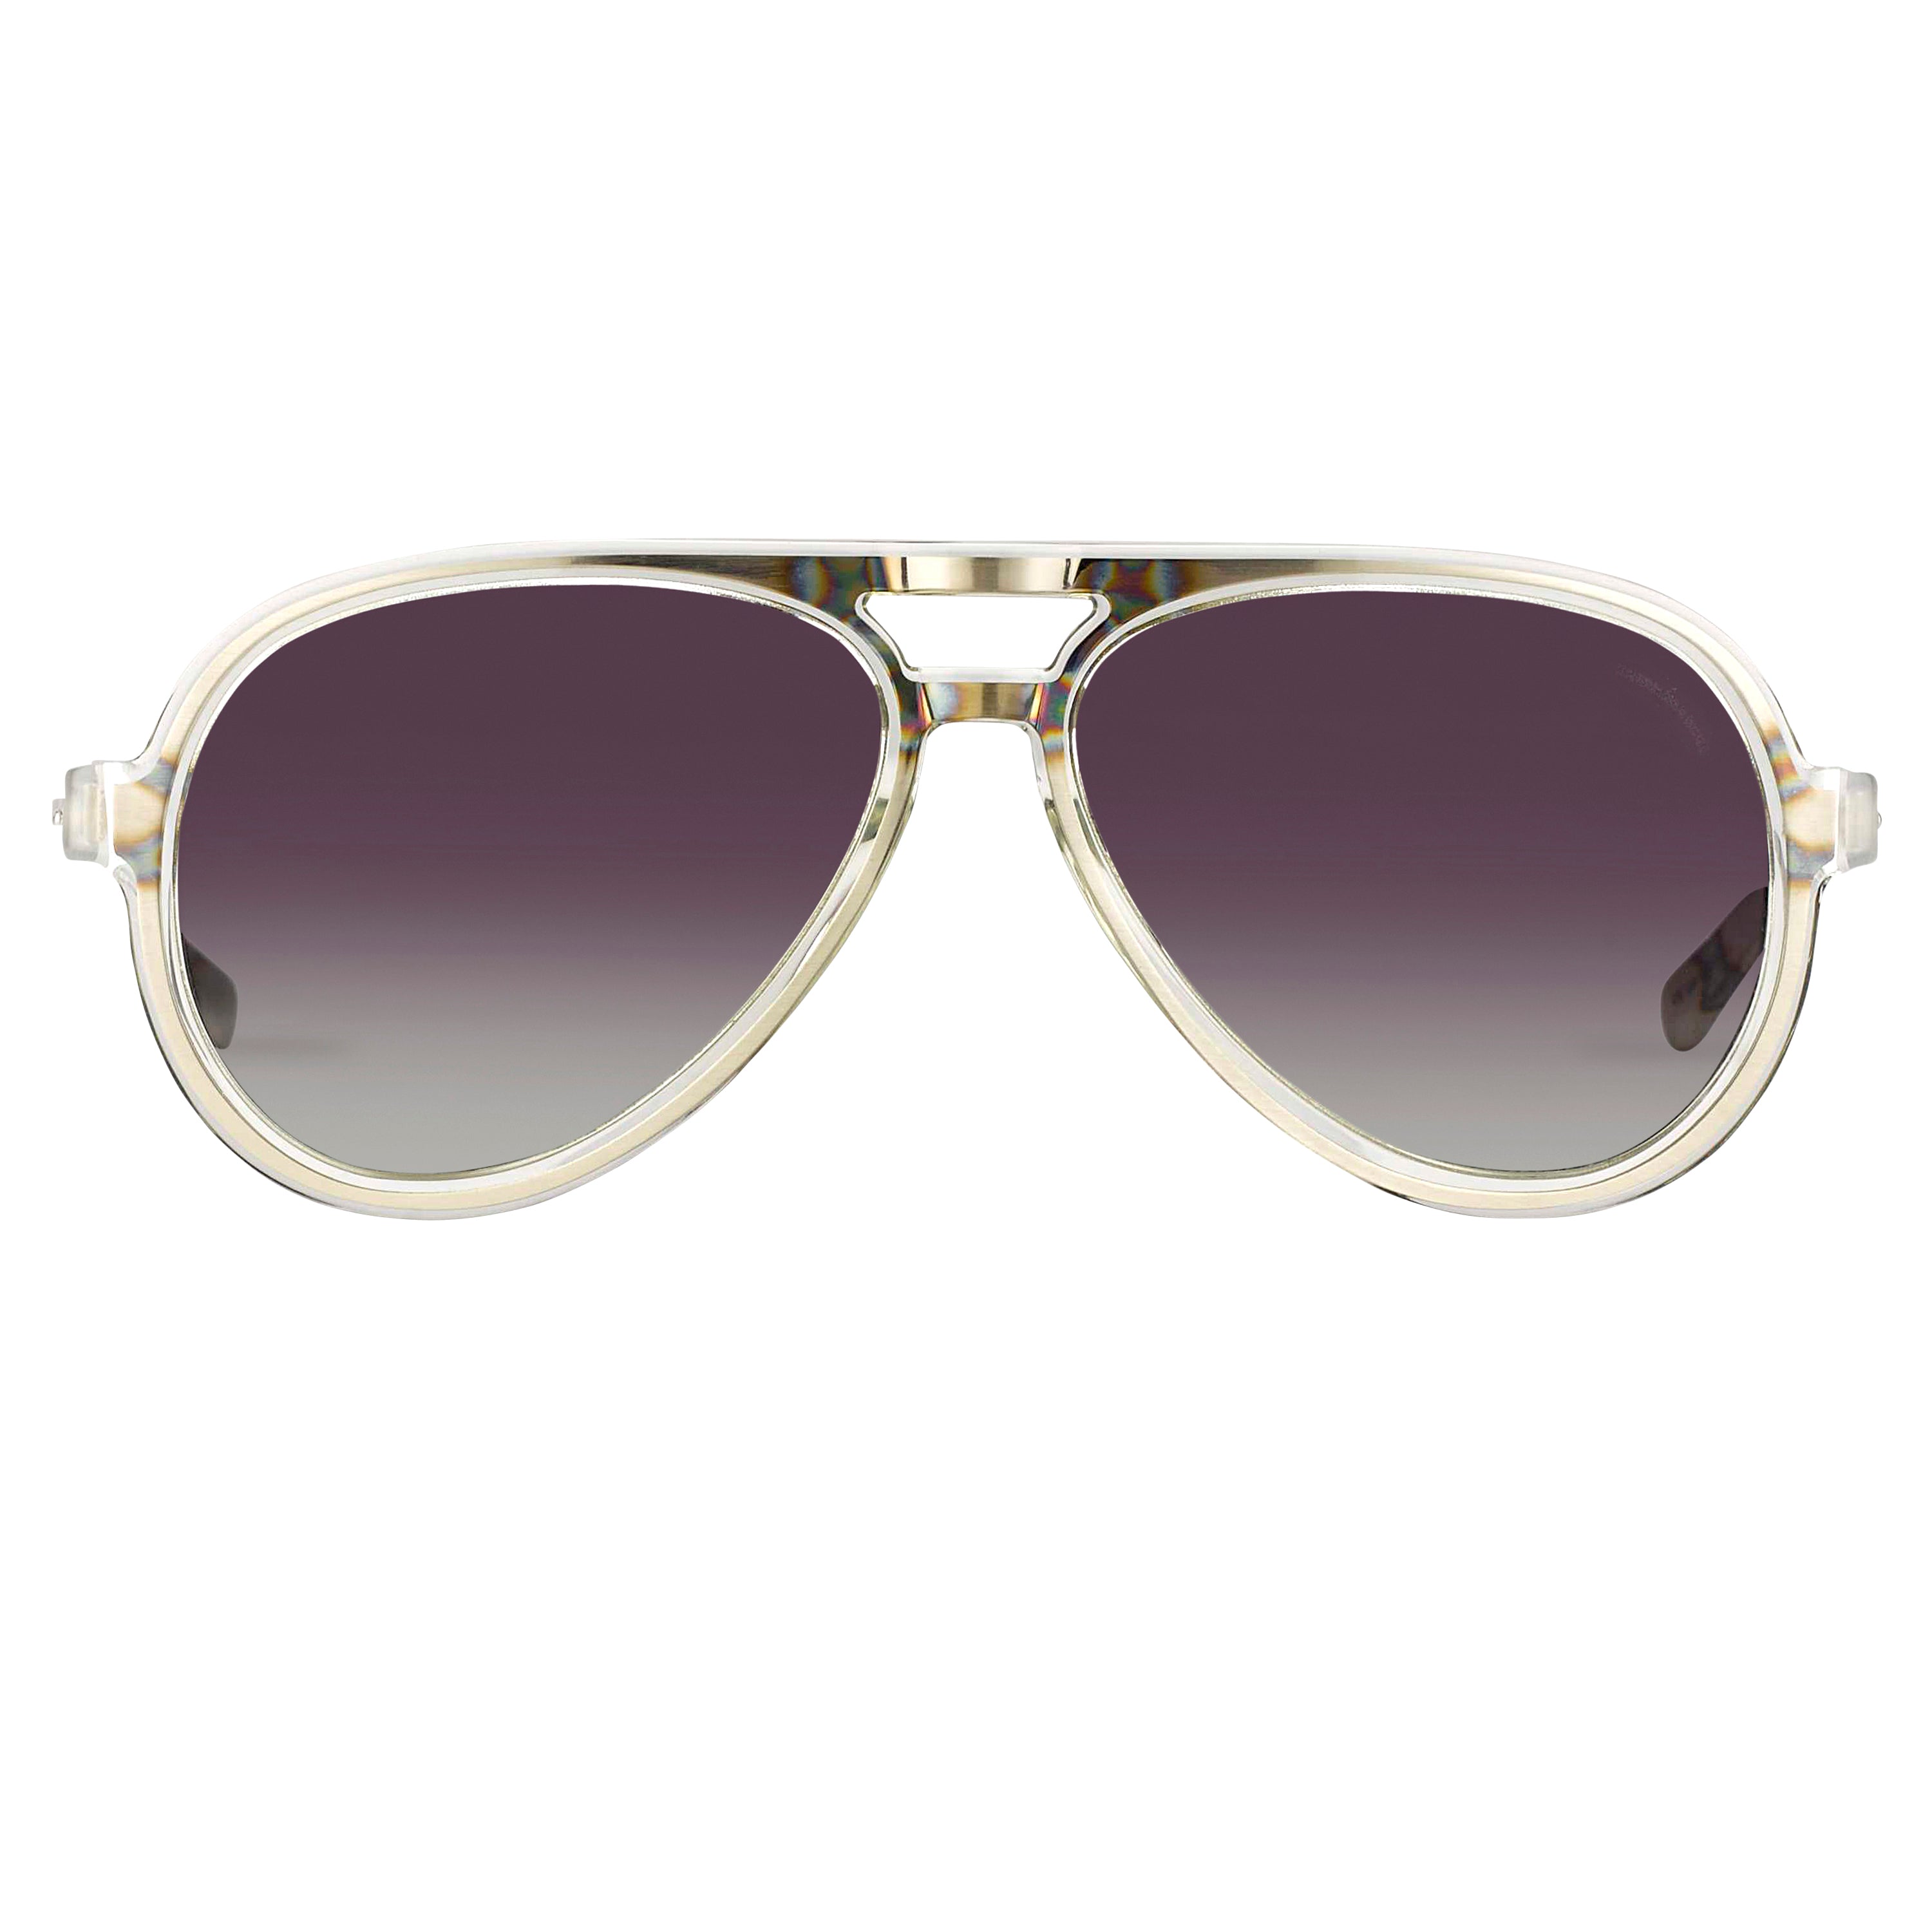 Kris Van Assche Aviator Sunglasses Clear Dark Grey